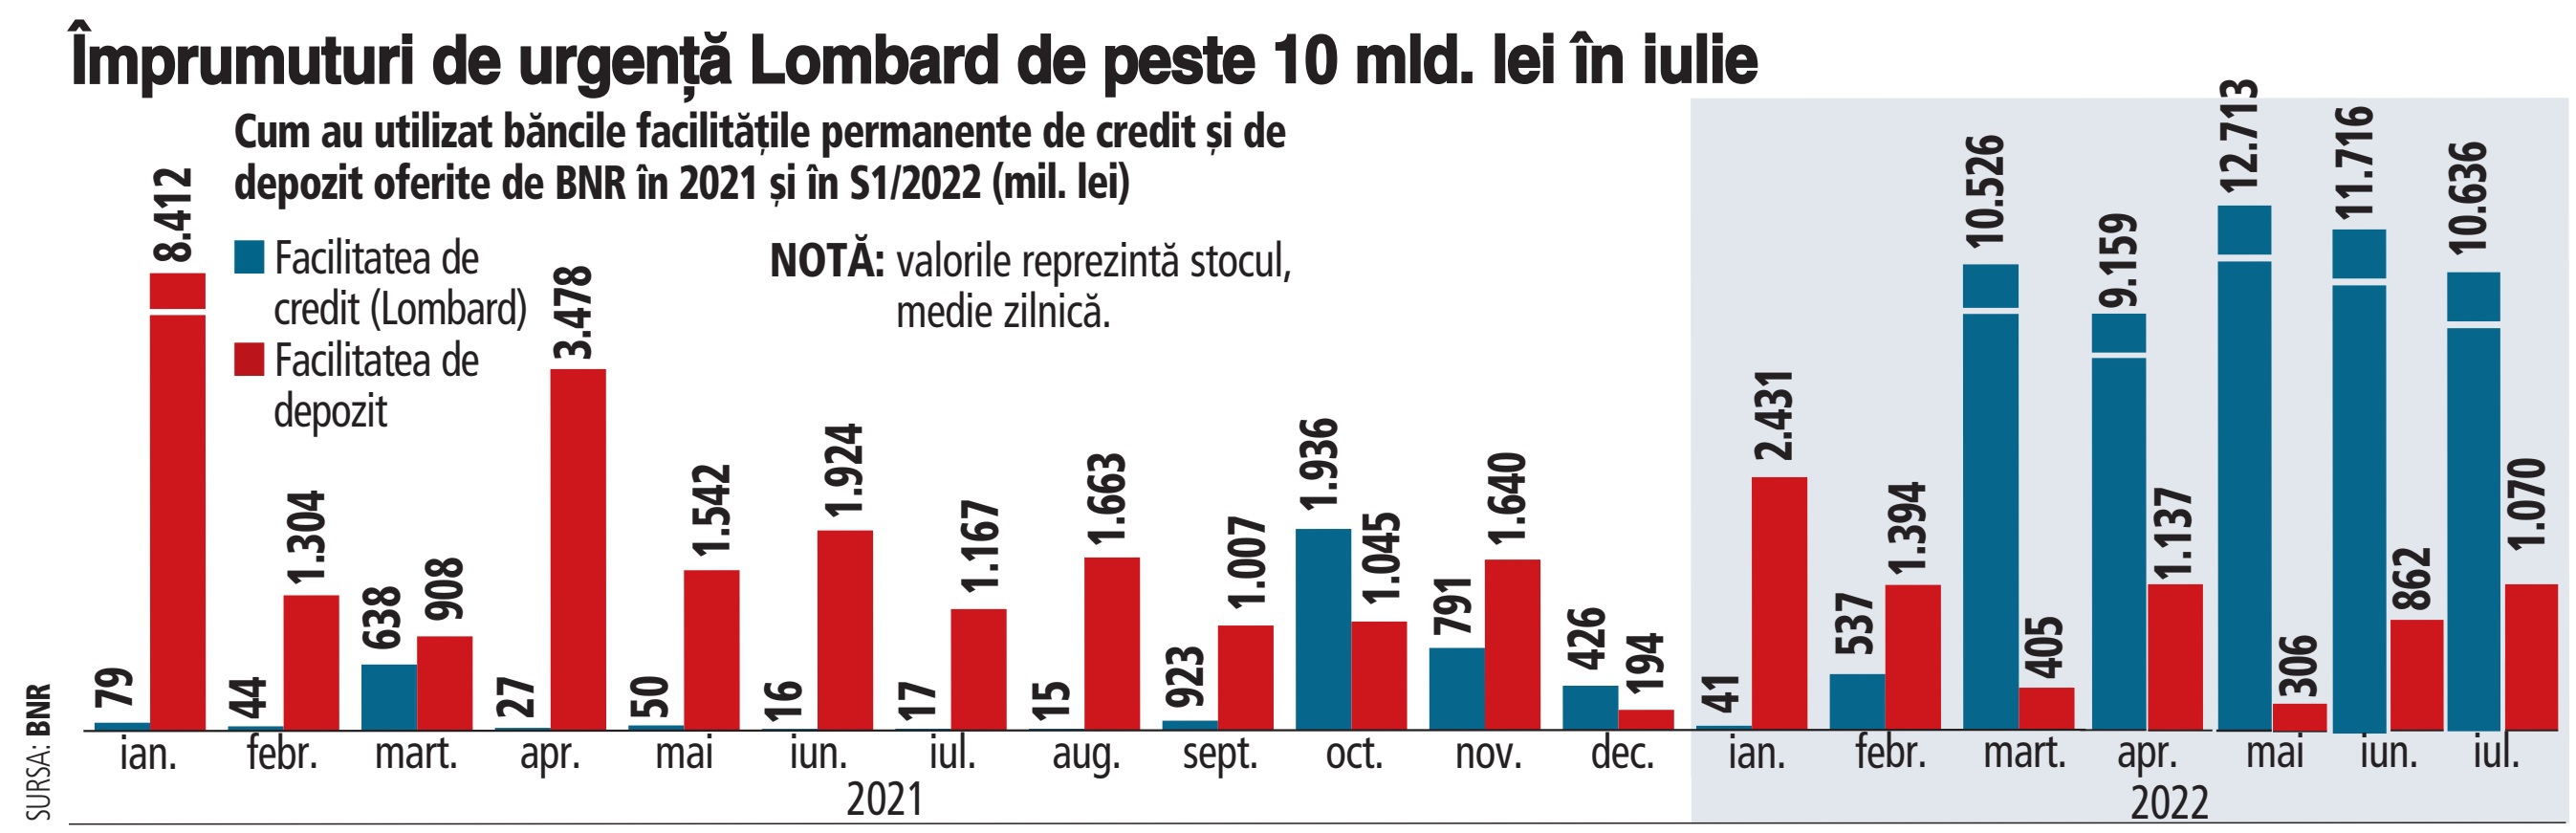 Lichiditatea interbancară a secat şi în a doua lună de vară. Deficitul de lichiditate pe piaţa interbancară: 9,6 mld. lei, medie zilnică, în iulie. Băncile continuă să se împrumute de la BNR la Lombard, pe o zi, cu dobândă medie de 5,4%/an, decât să ofere dobânzi mai mari la depozitele românilor. Finanţările de urgenţă Lombard: 10,6 mld. lei, medie zilnică, în iulie